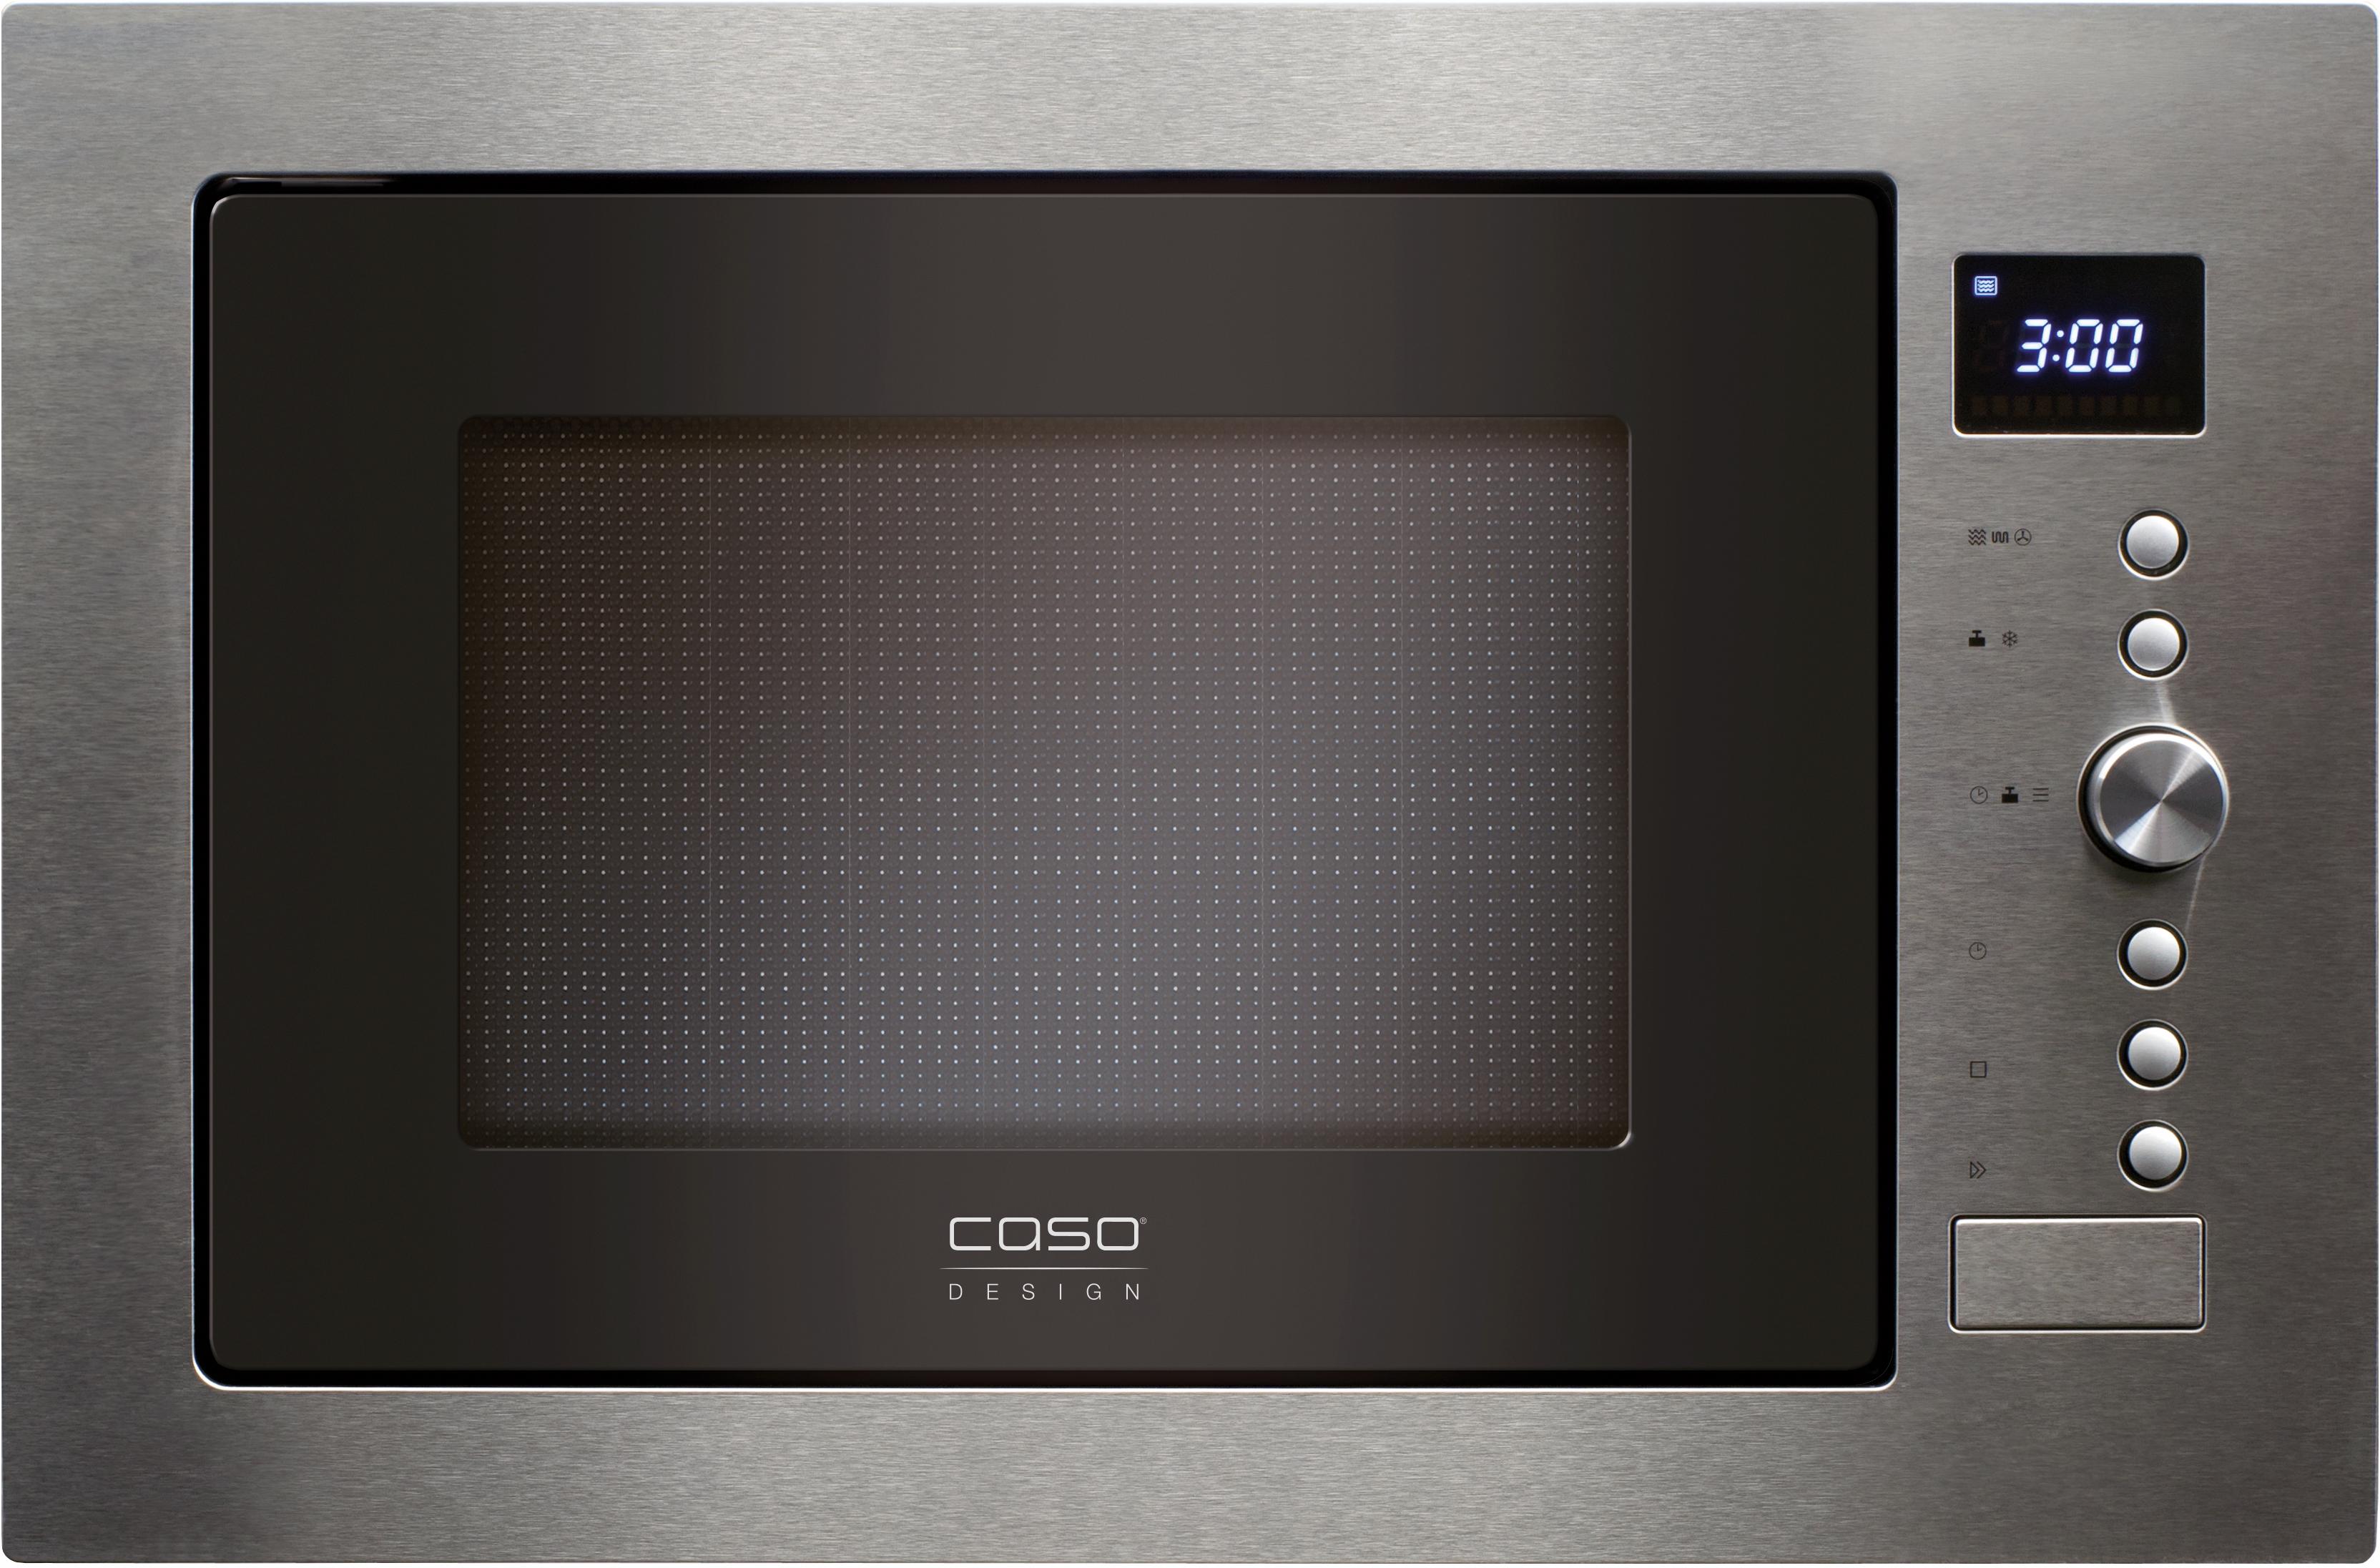 Caso Einbau-Mikrowelle EMCG32, Mikrowelle-Grill und Heißluft, 1000 W schwarz Einbaumikrowellen Mikrowelle Haushaltsgeräte